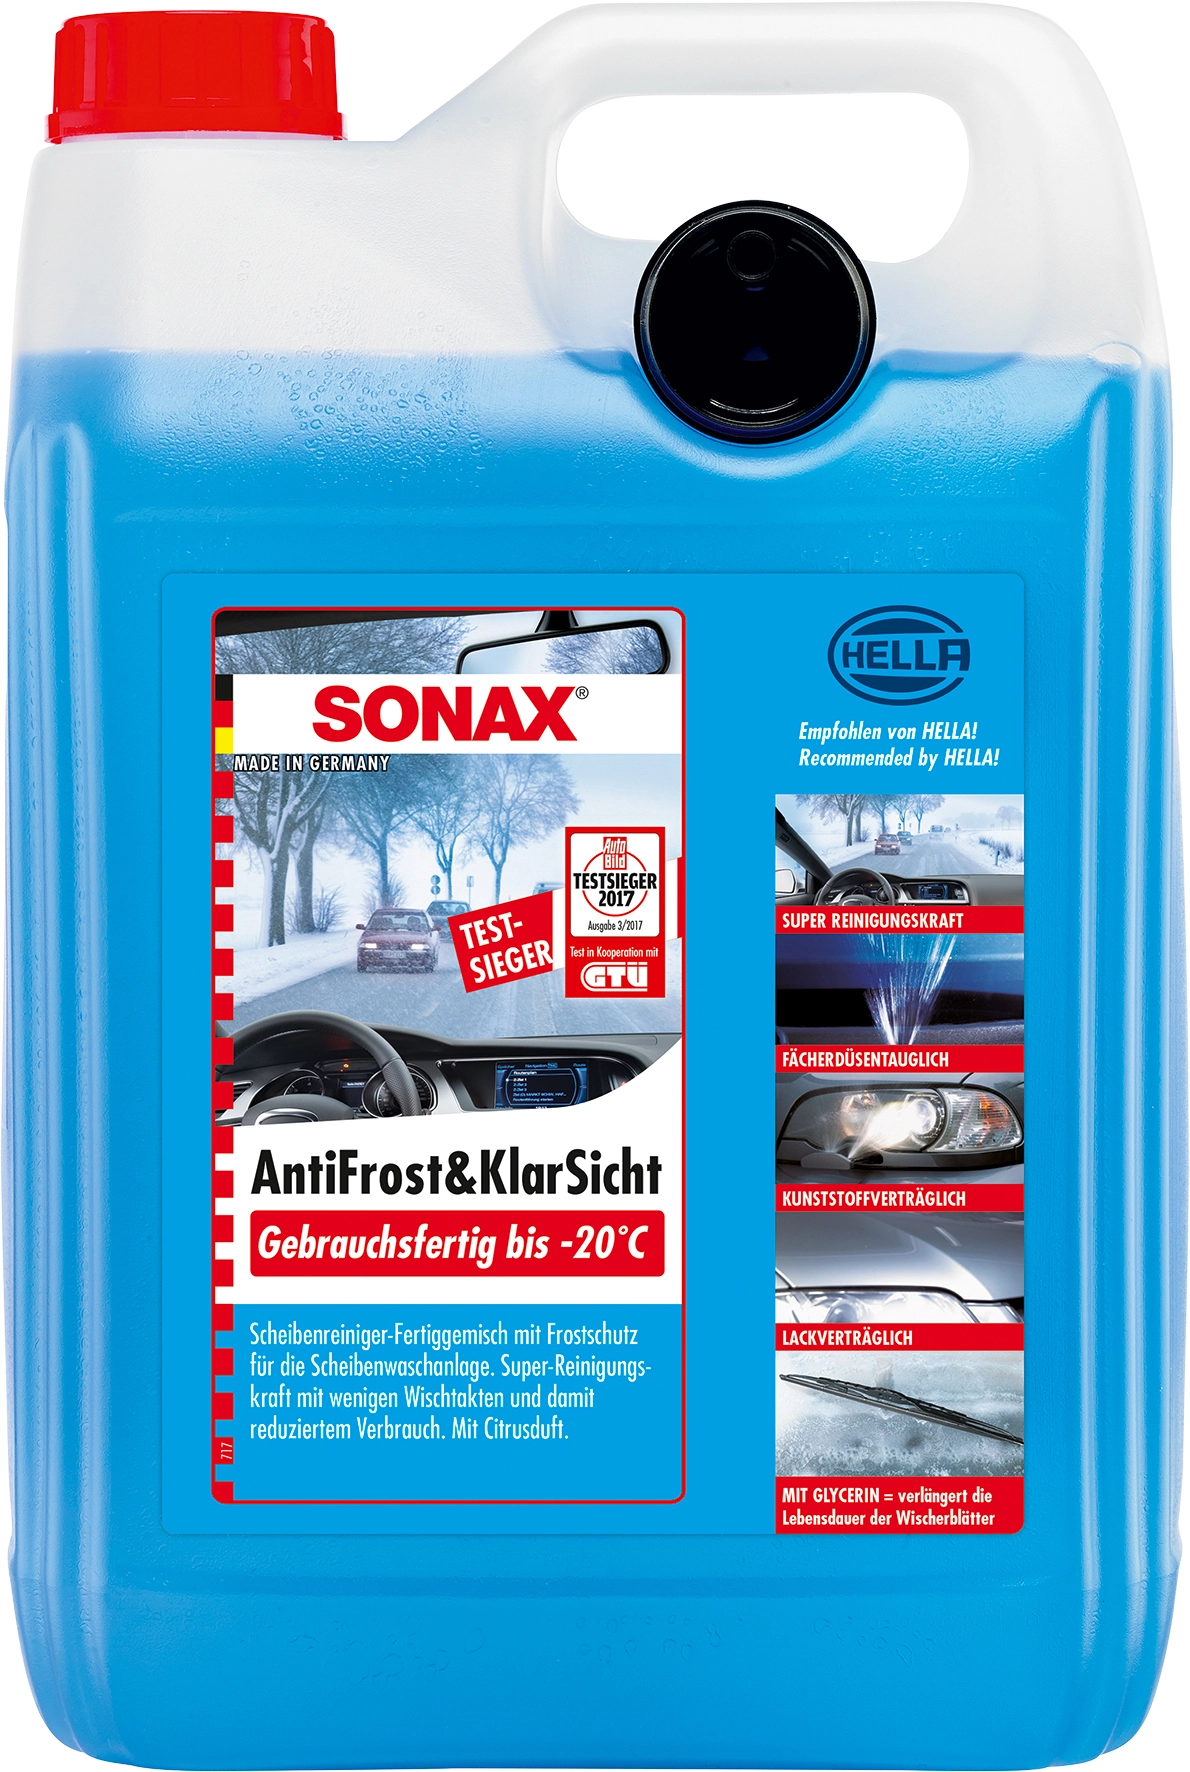 Sonax scheibenfrostschutz kaufen bei OBI